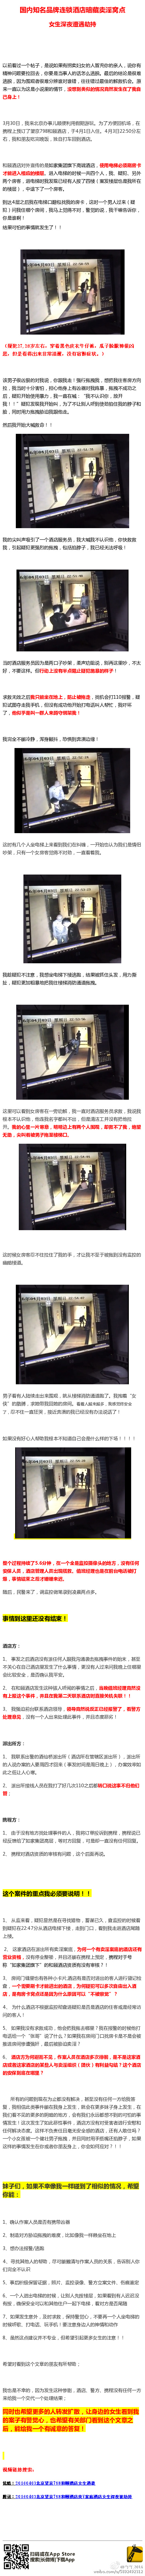 女网友曝在北京高端酒店遇袭 警方回应:正核实(图)